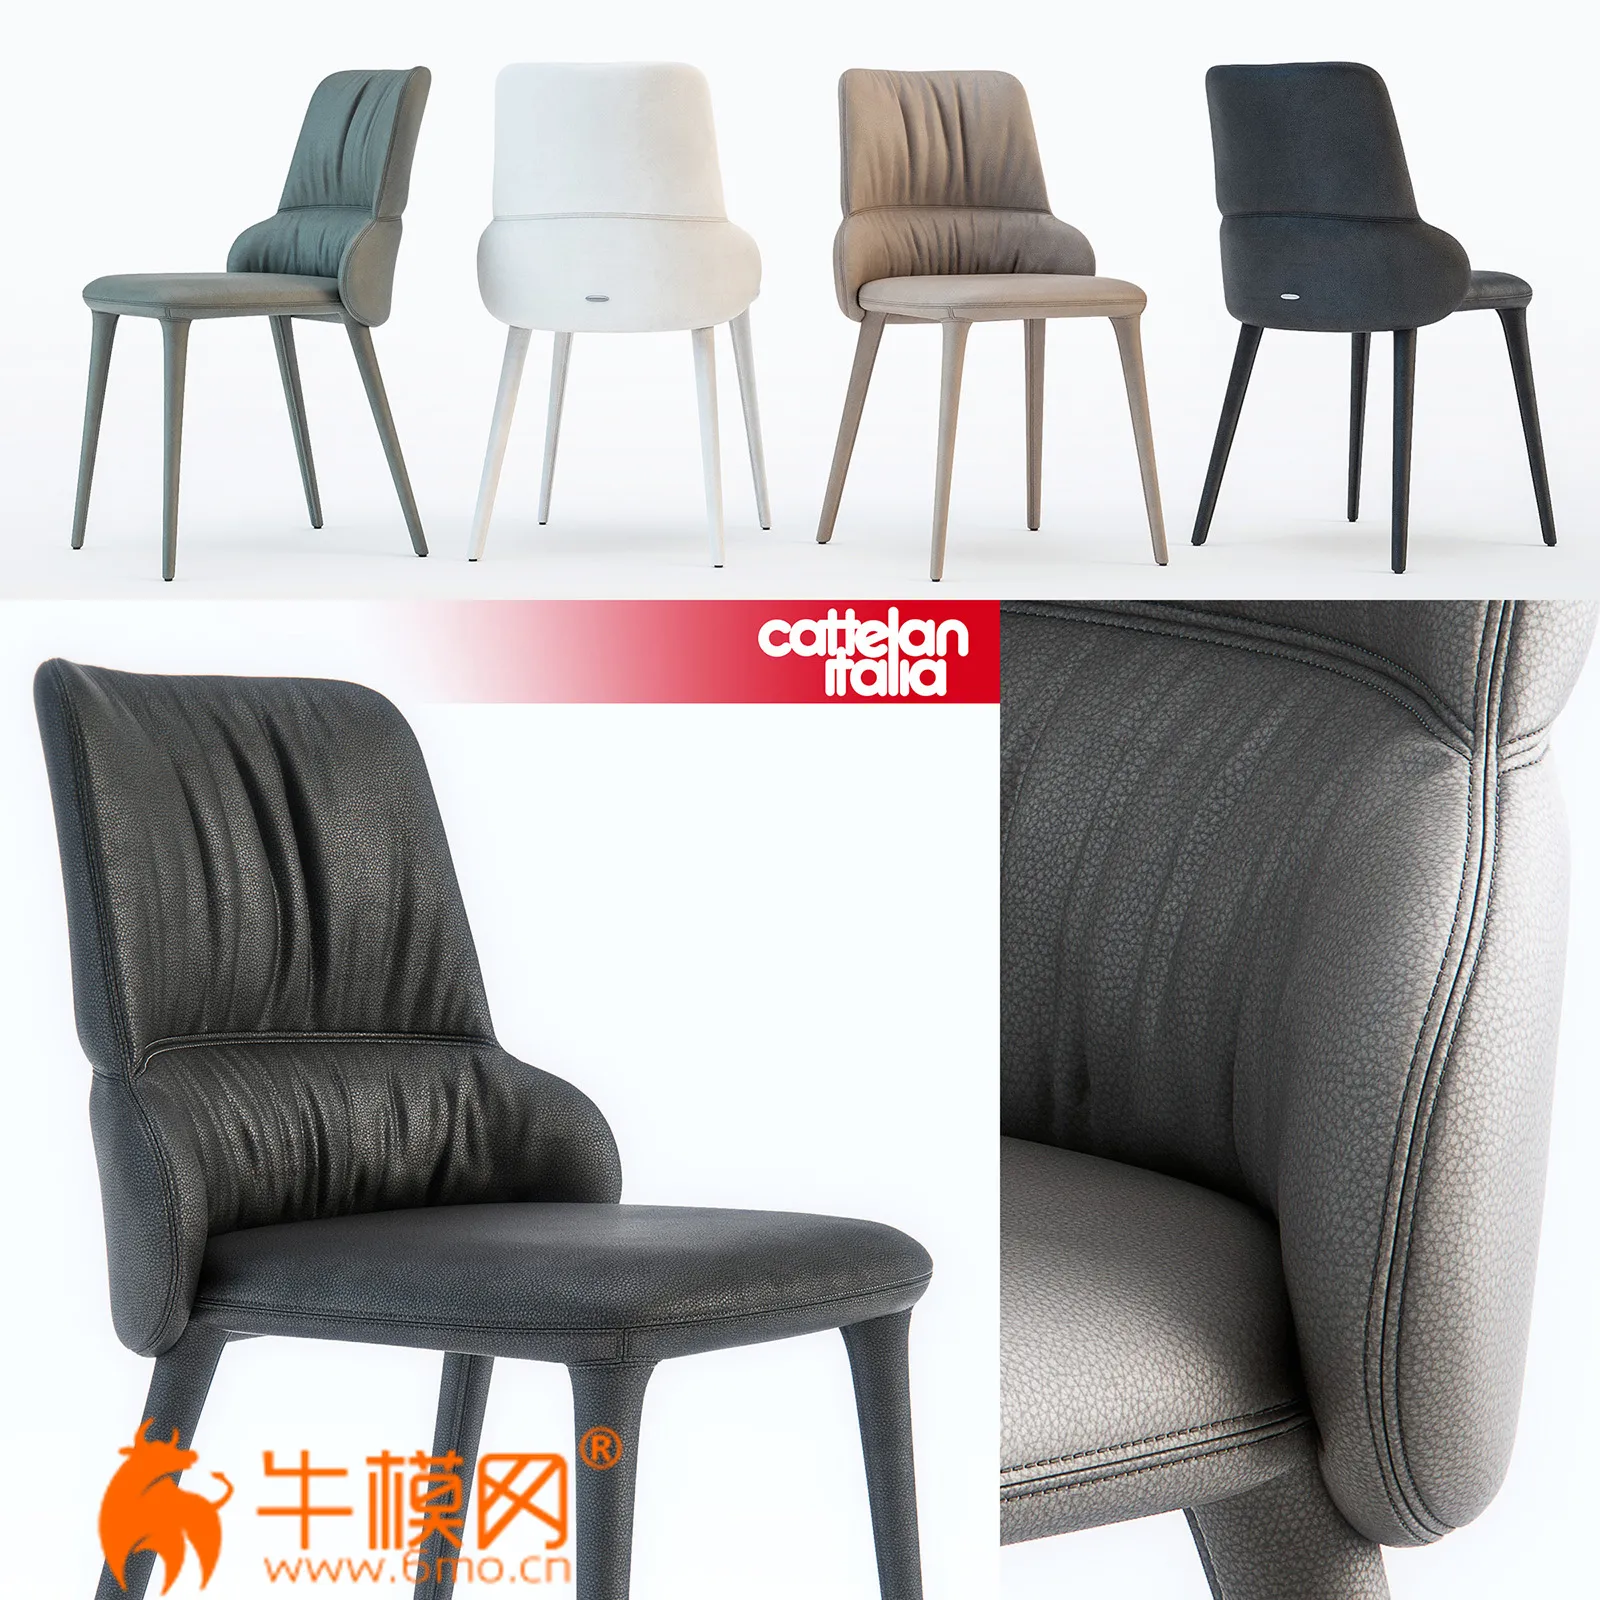 Cattelan Italia Ginger chair (max 2011, 2014, obj) – 3973